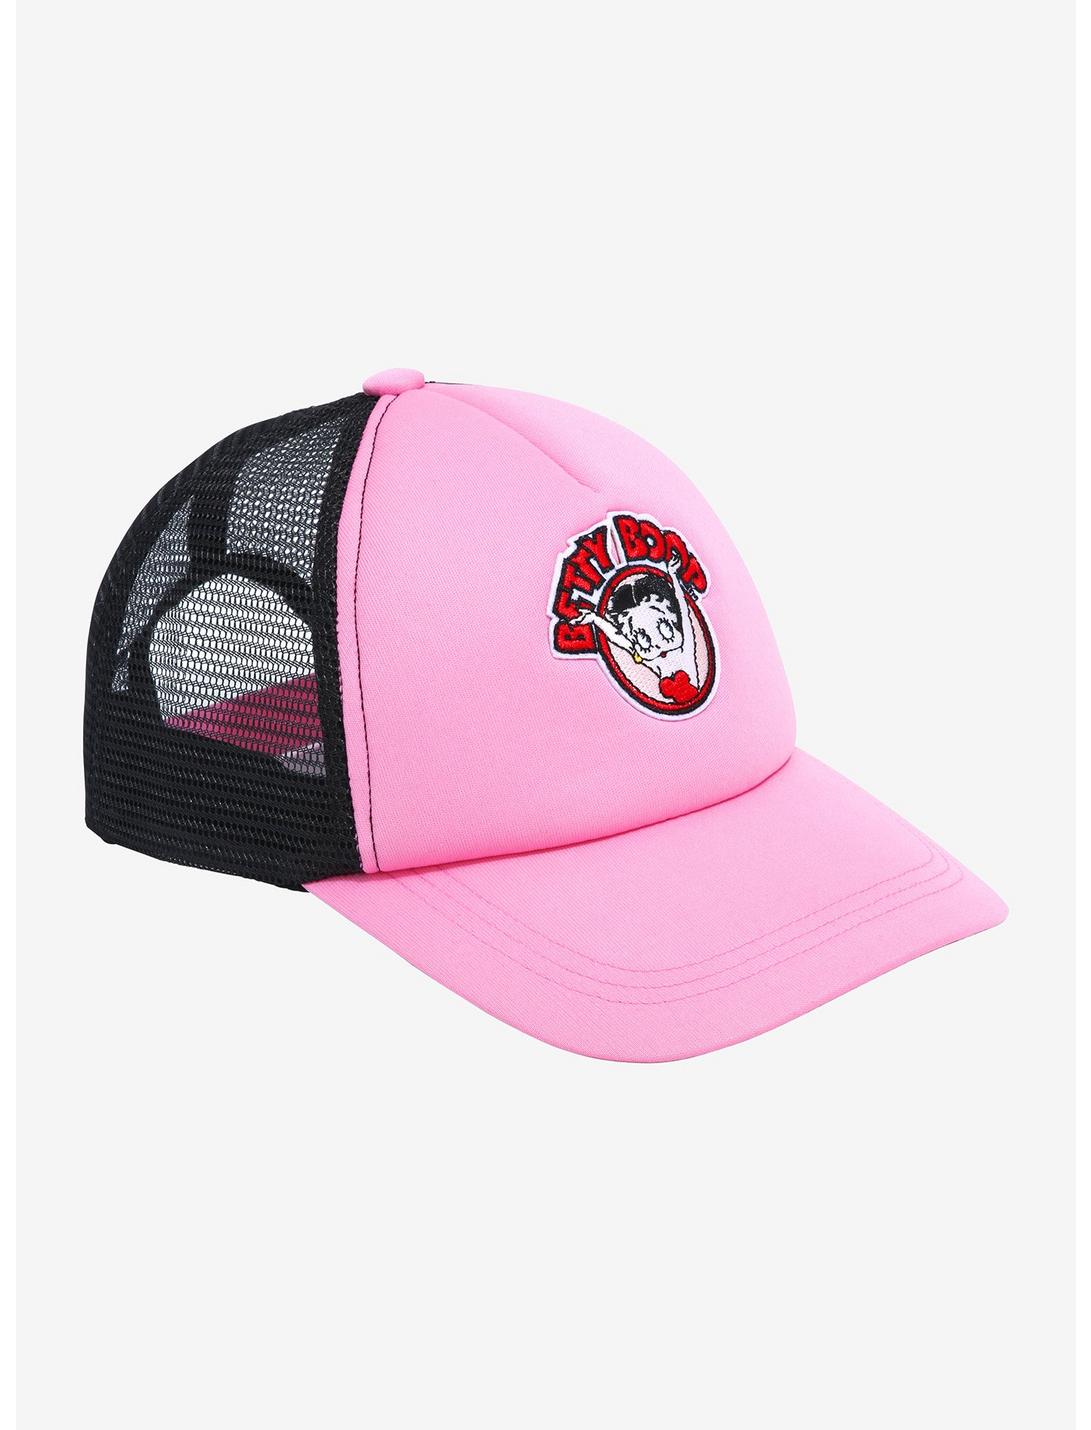 Betty Boop Pink Trucker Hat, , hi-res